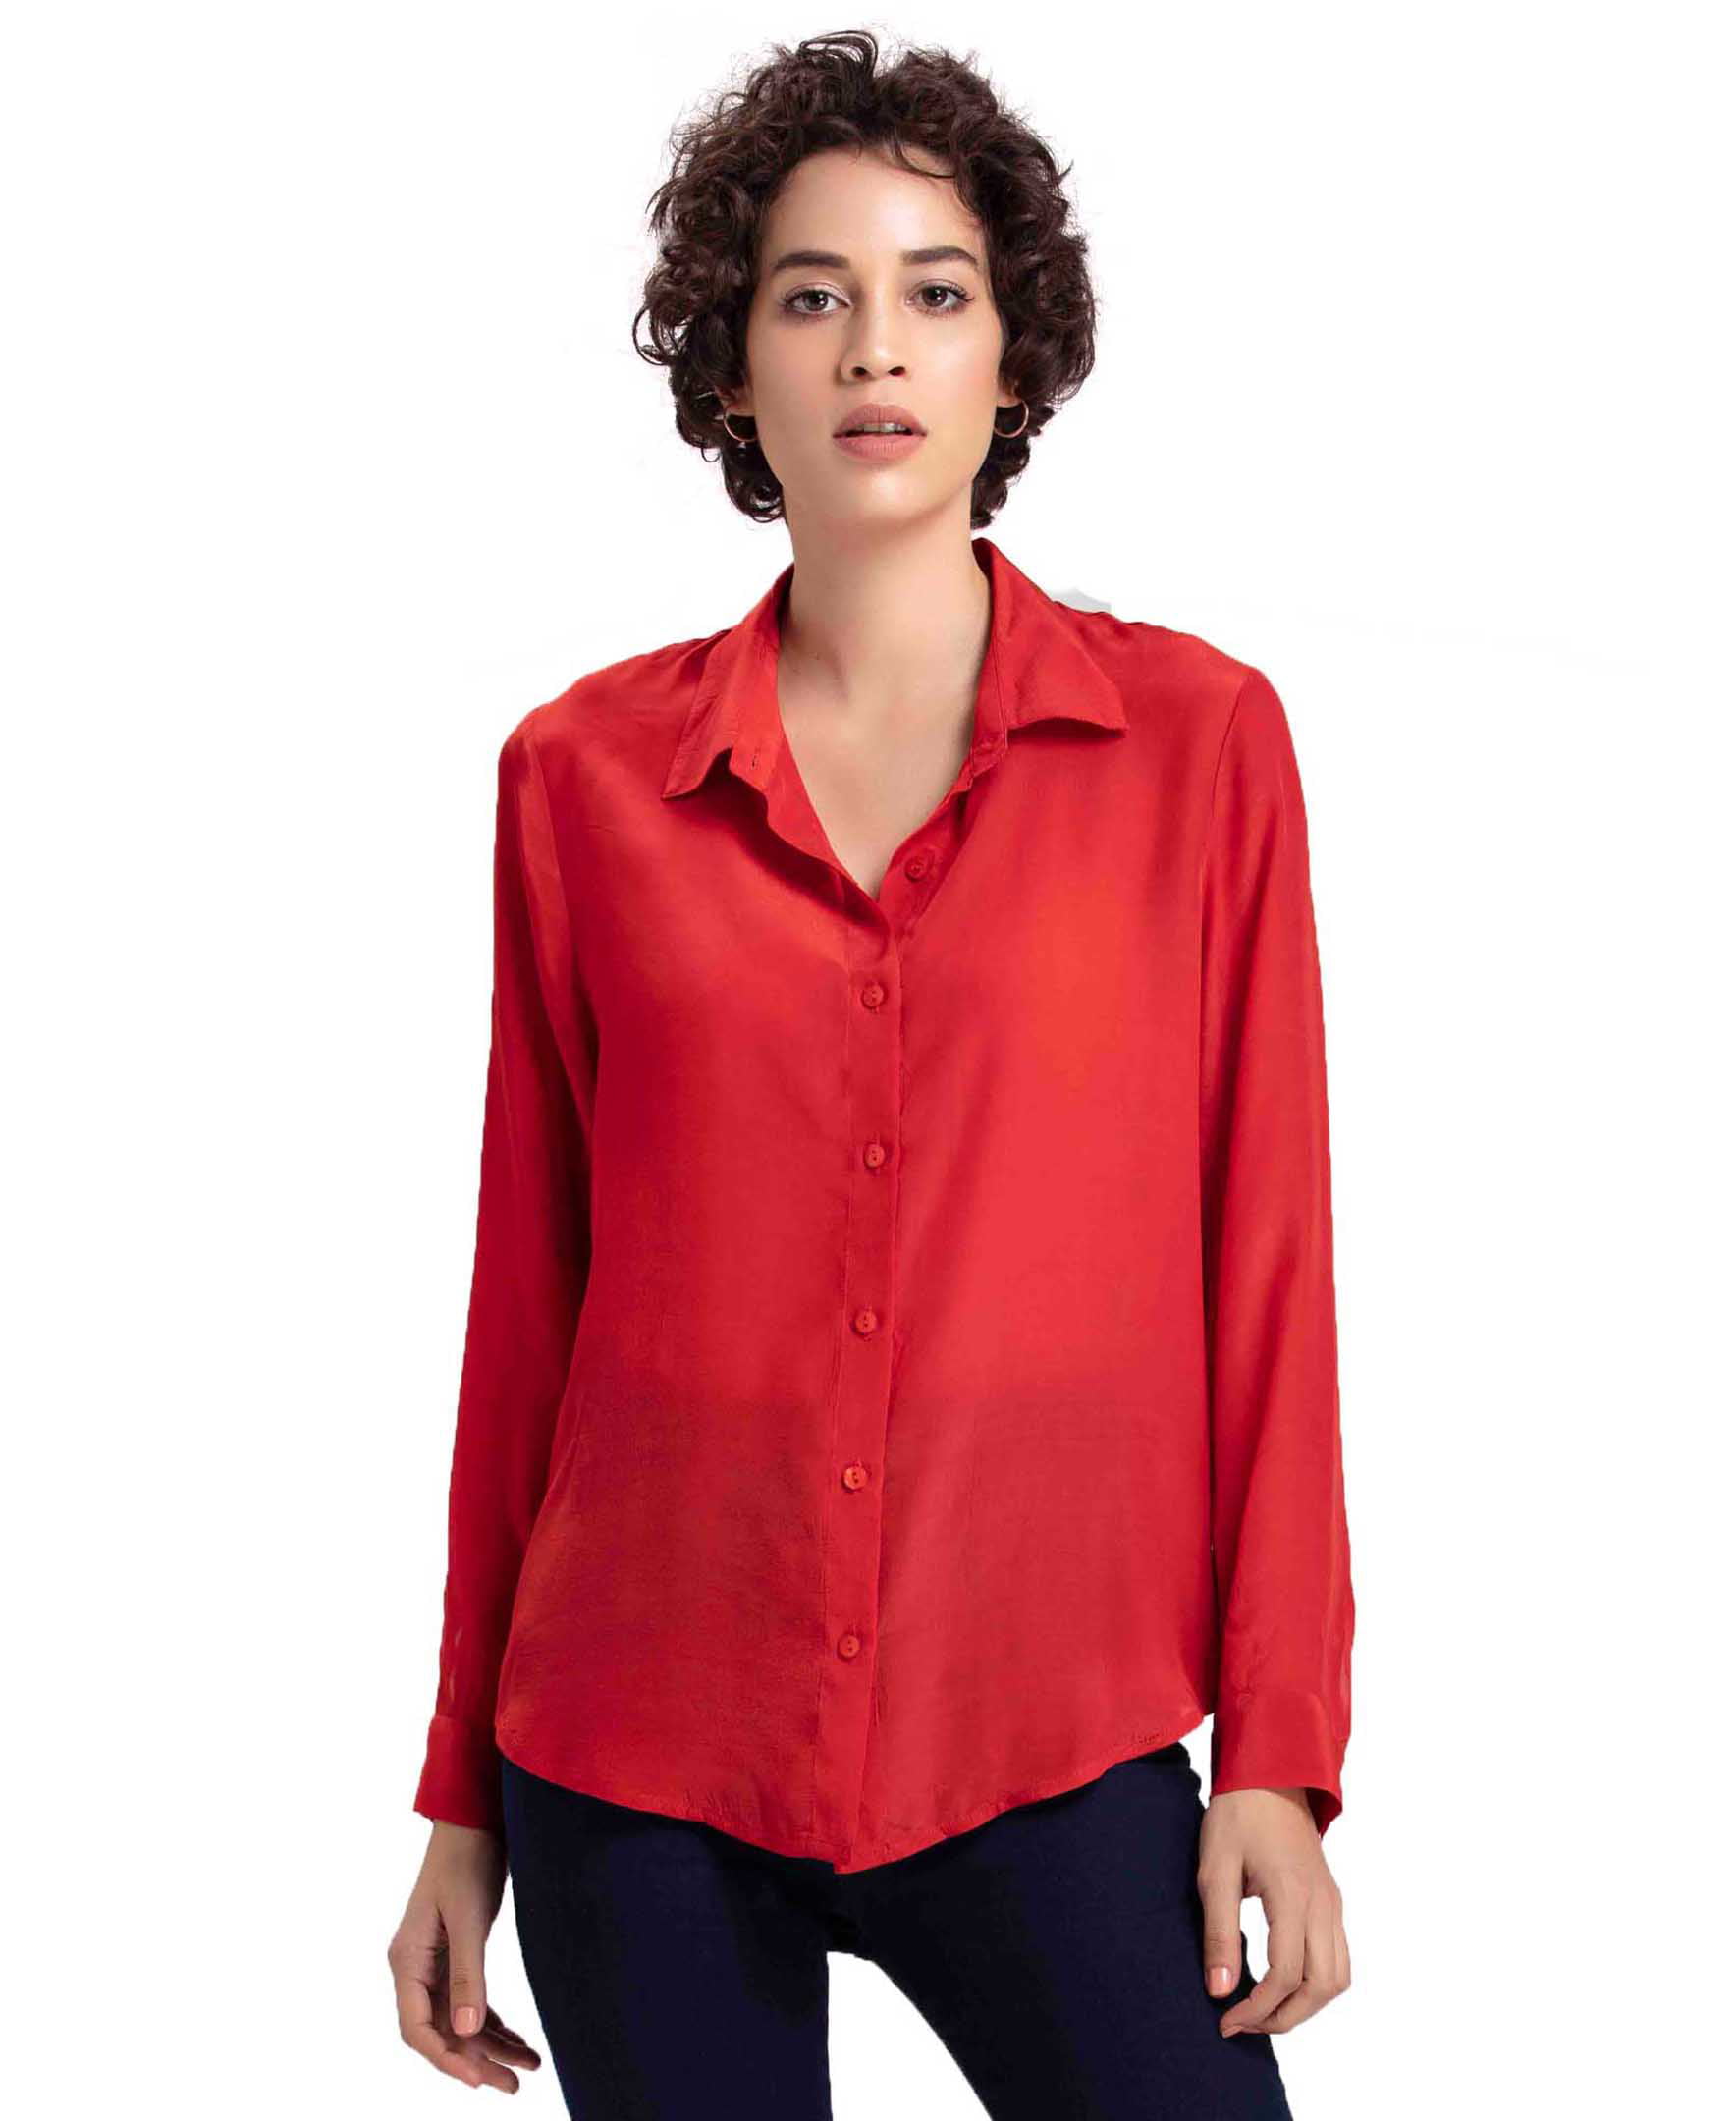 womens red dress shirt